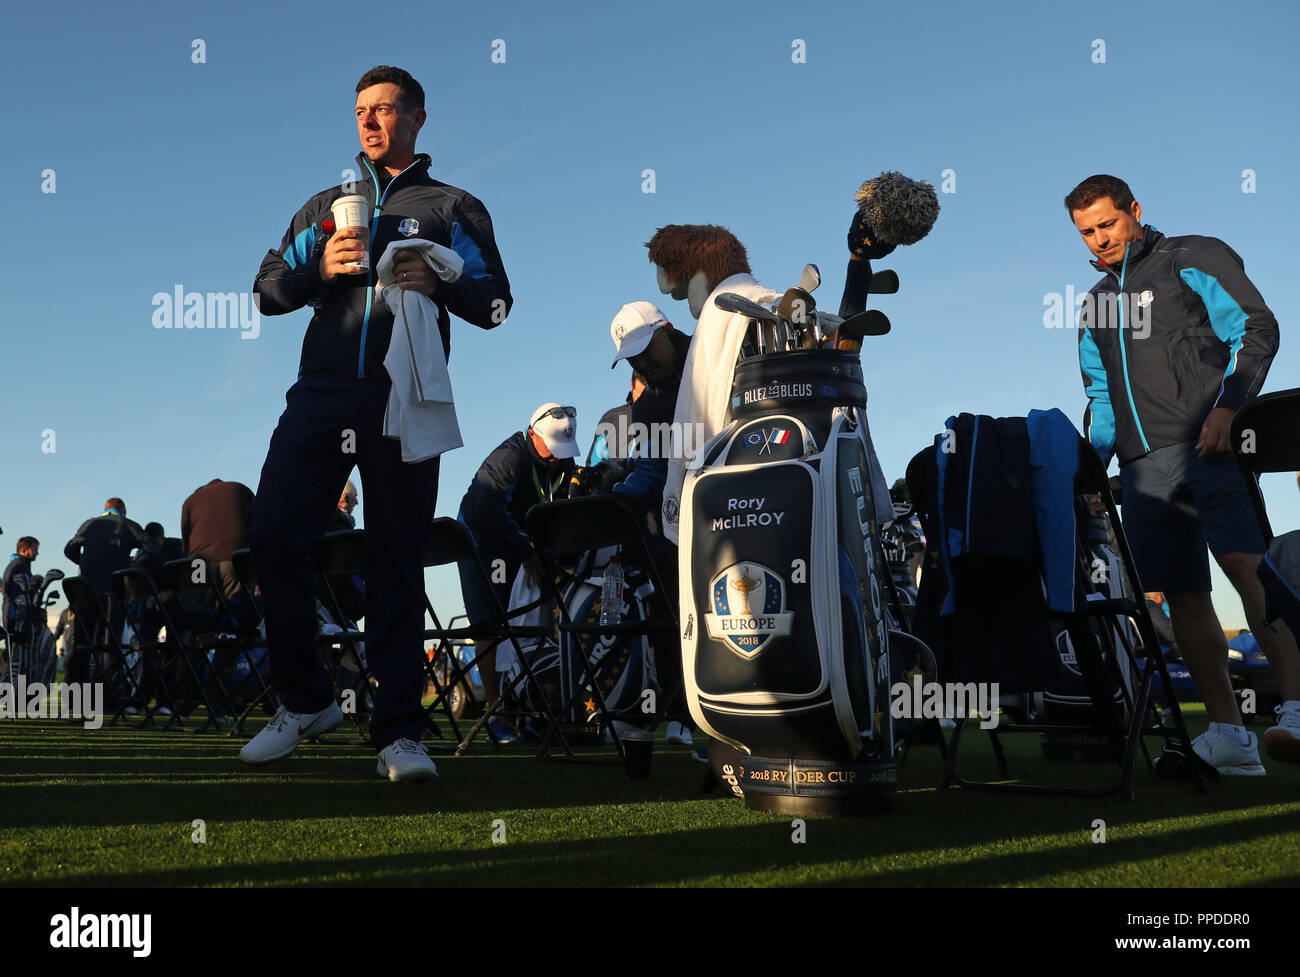 L'équipe de Rory McIlroy après une photo de l'équipe au cours de l'aperçu de la deuxième journée de la Ryder Cup au Golf National, Saint-Quentin-en-Yvelines, Paris. Banque D'Images